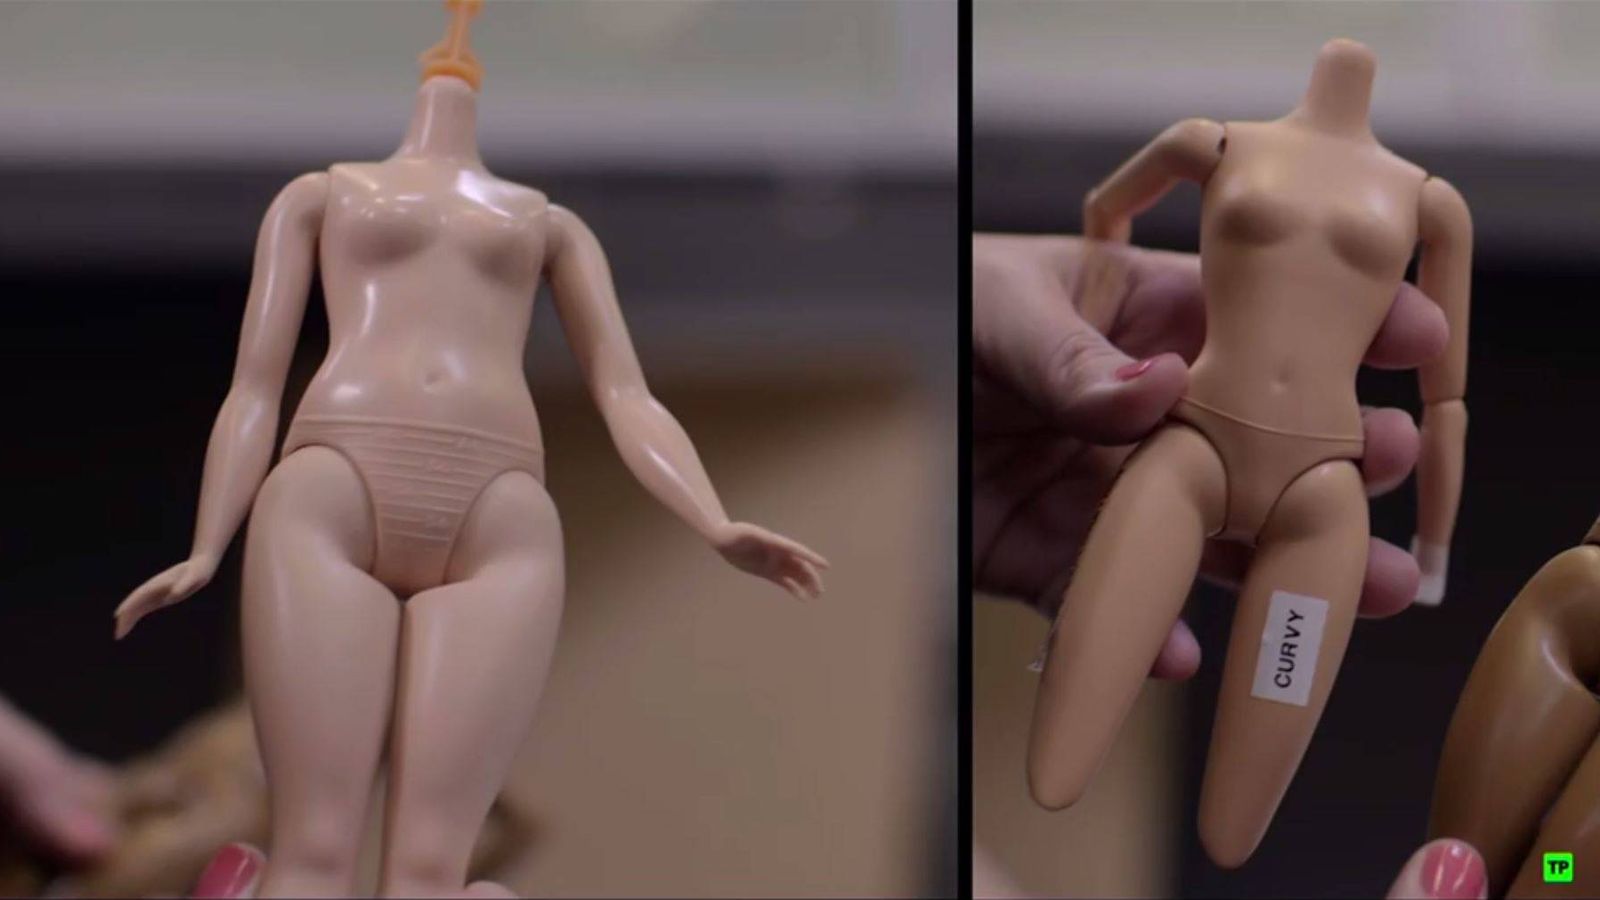 Foto: Imagen del documental 'Desmontando a Barbie' durante el proceso de creación de los nuevos modelos.